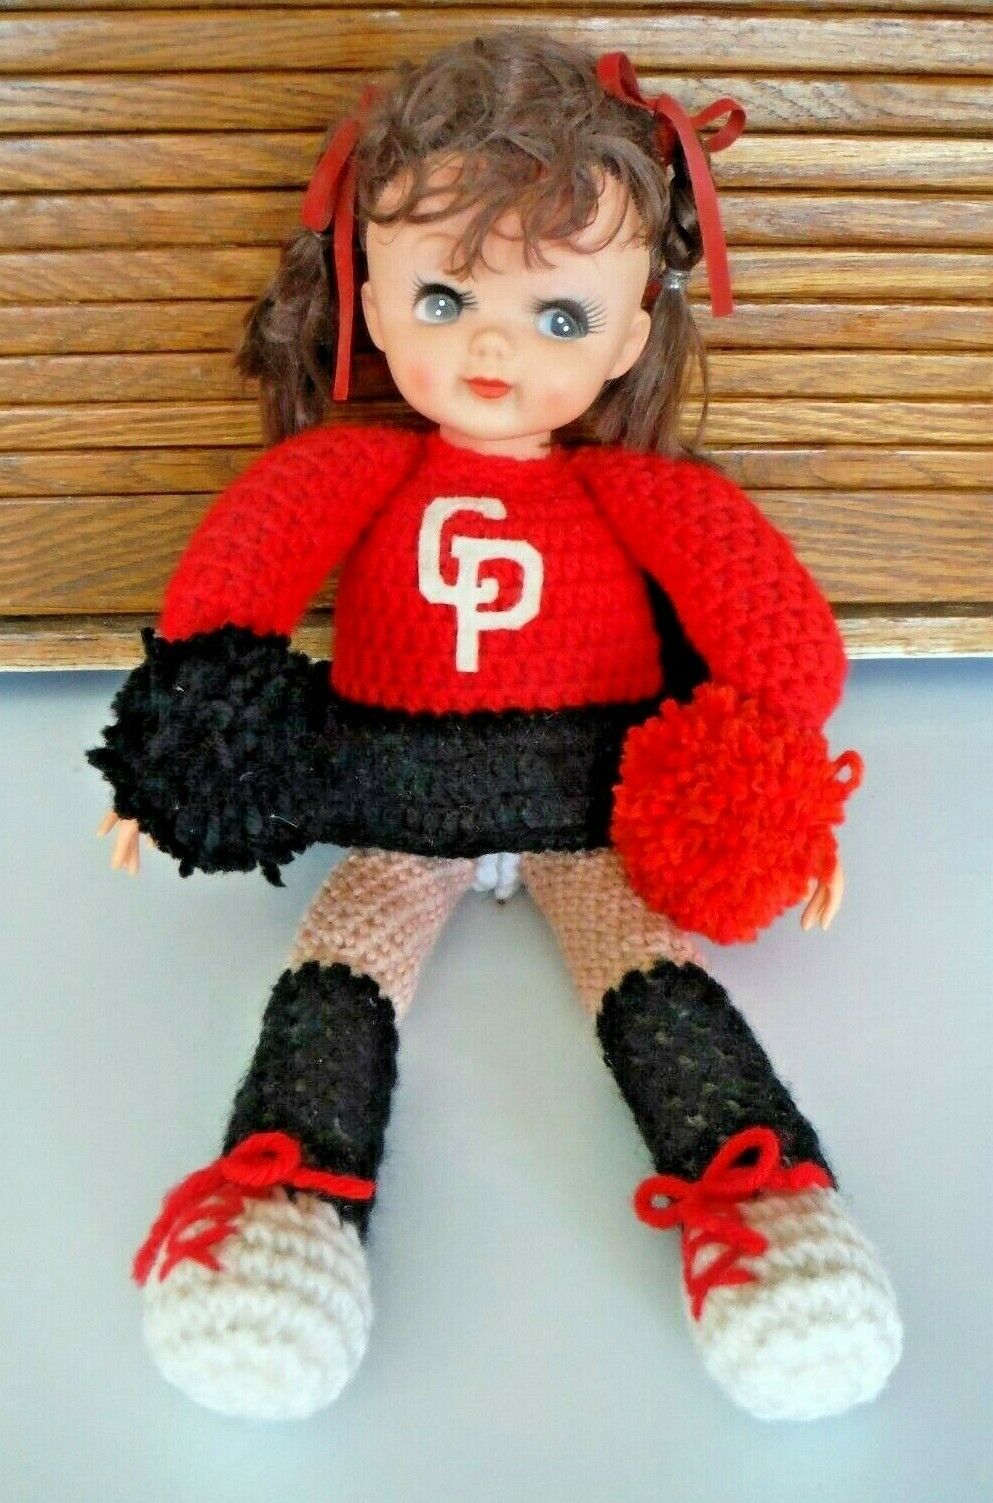 Vintage Handmade Crochet Knit Doll 18" Cheerleader With Pom Poms